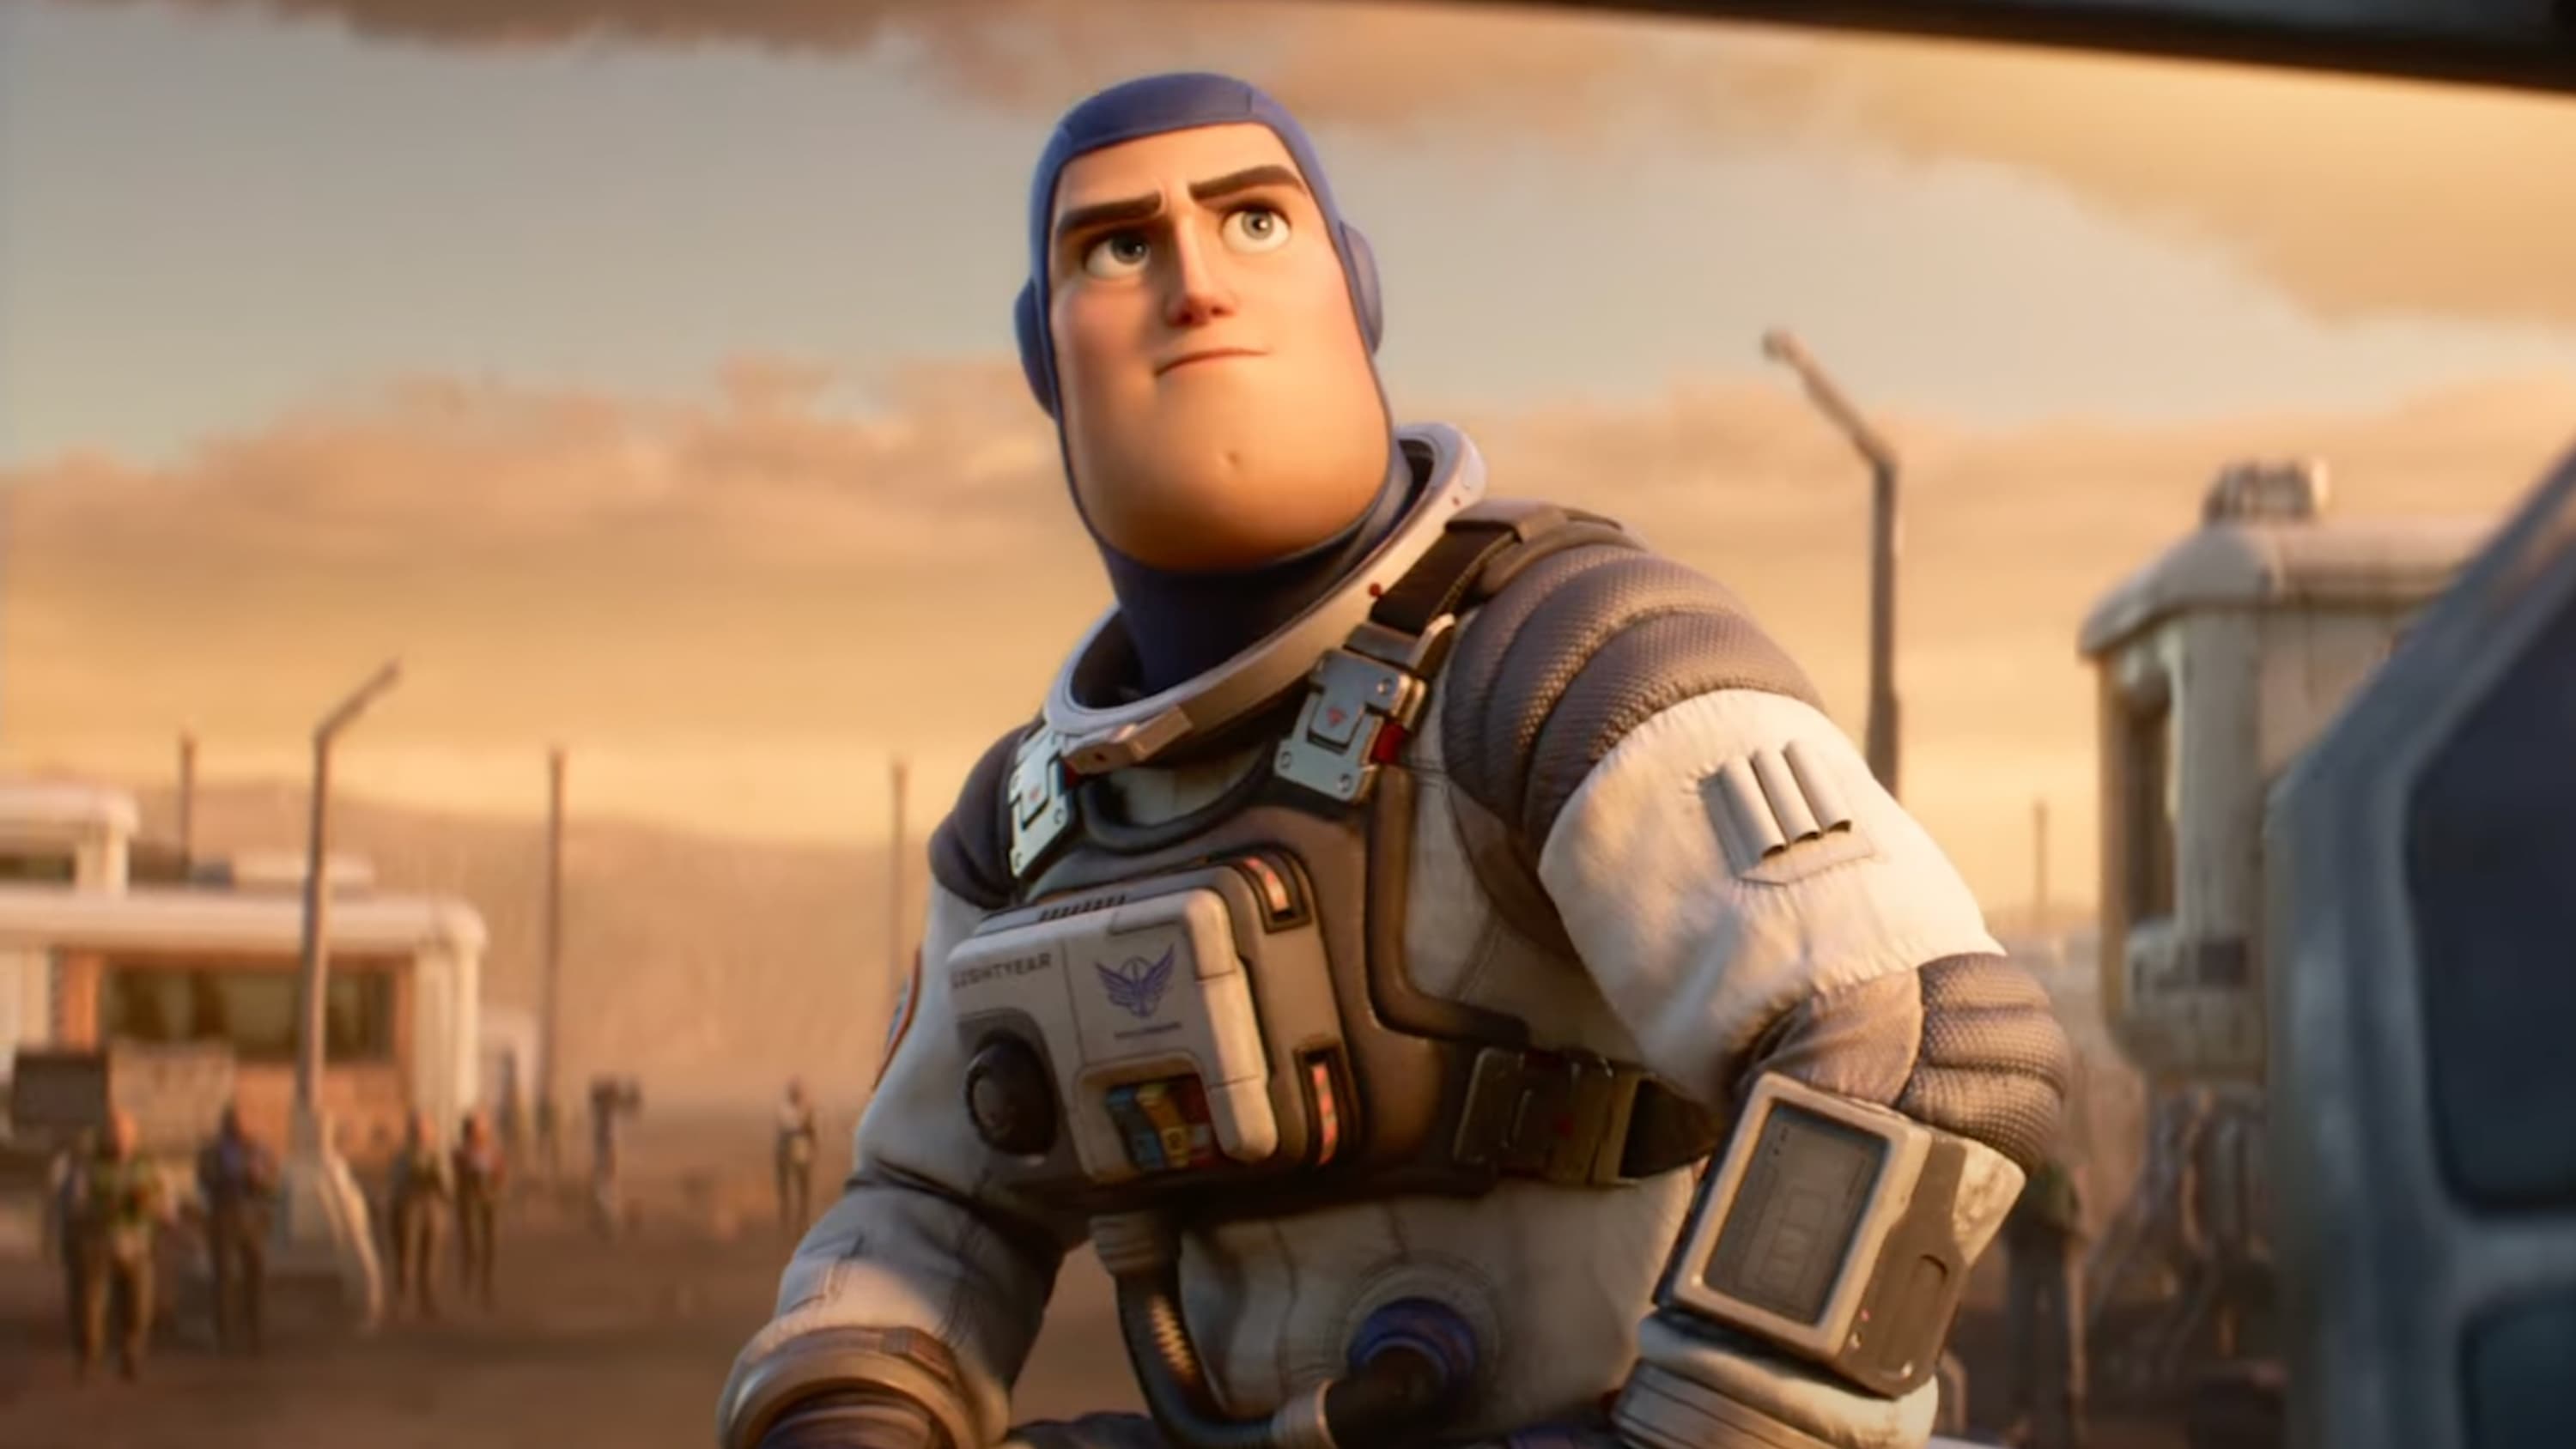 Buzz l'Éclair (Canal+) : où se situe le film dans la saga Toy Story ?